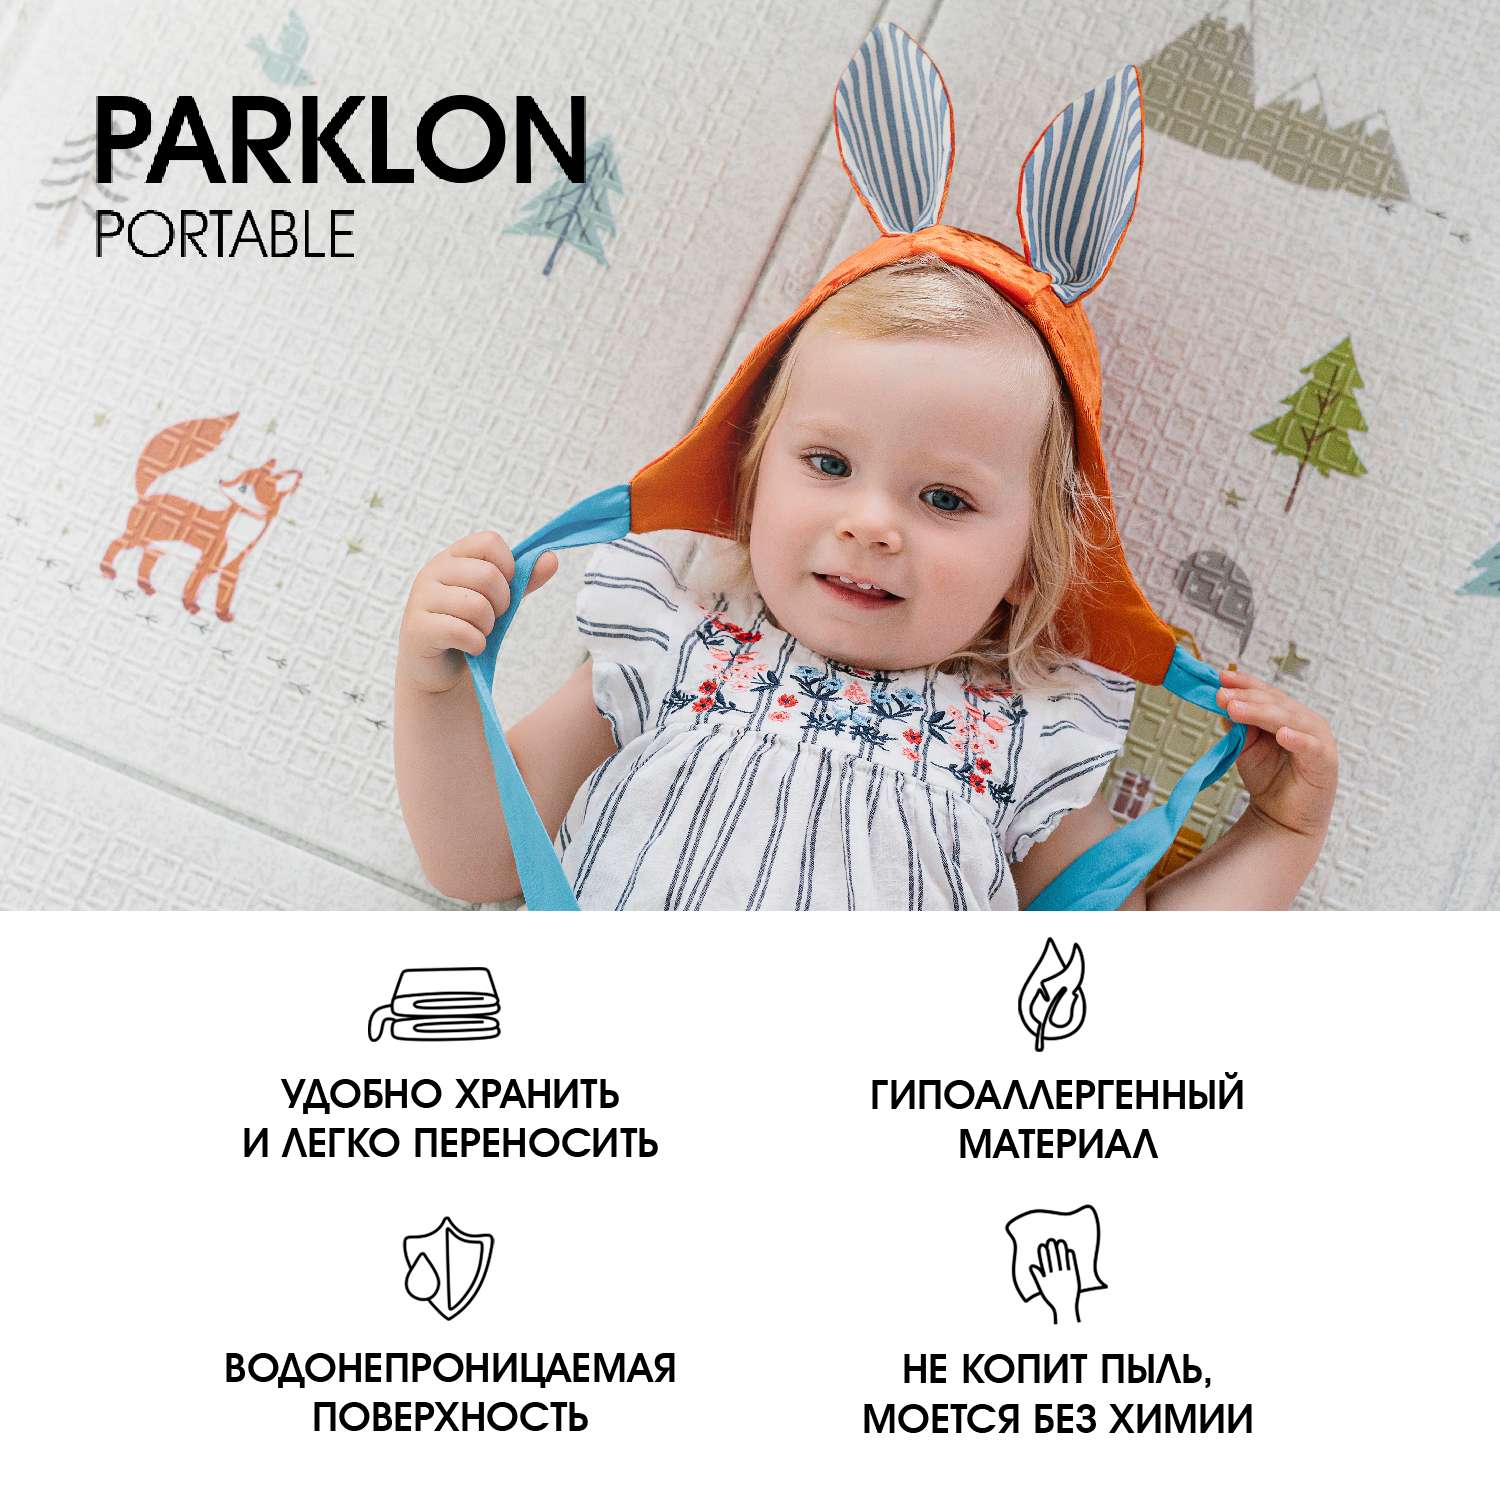 Коврик детский складной PARKLON Portable Лес чудес - фото 9